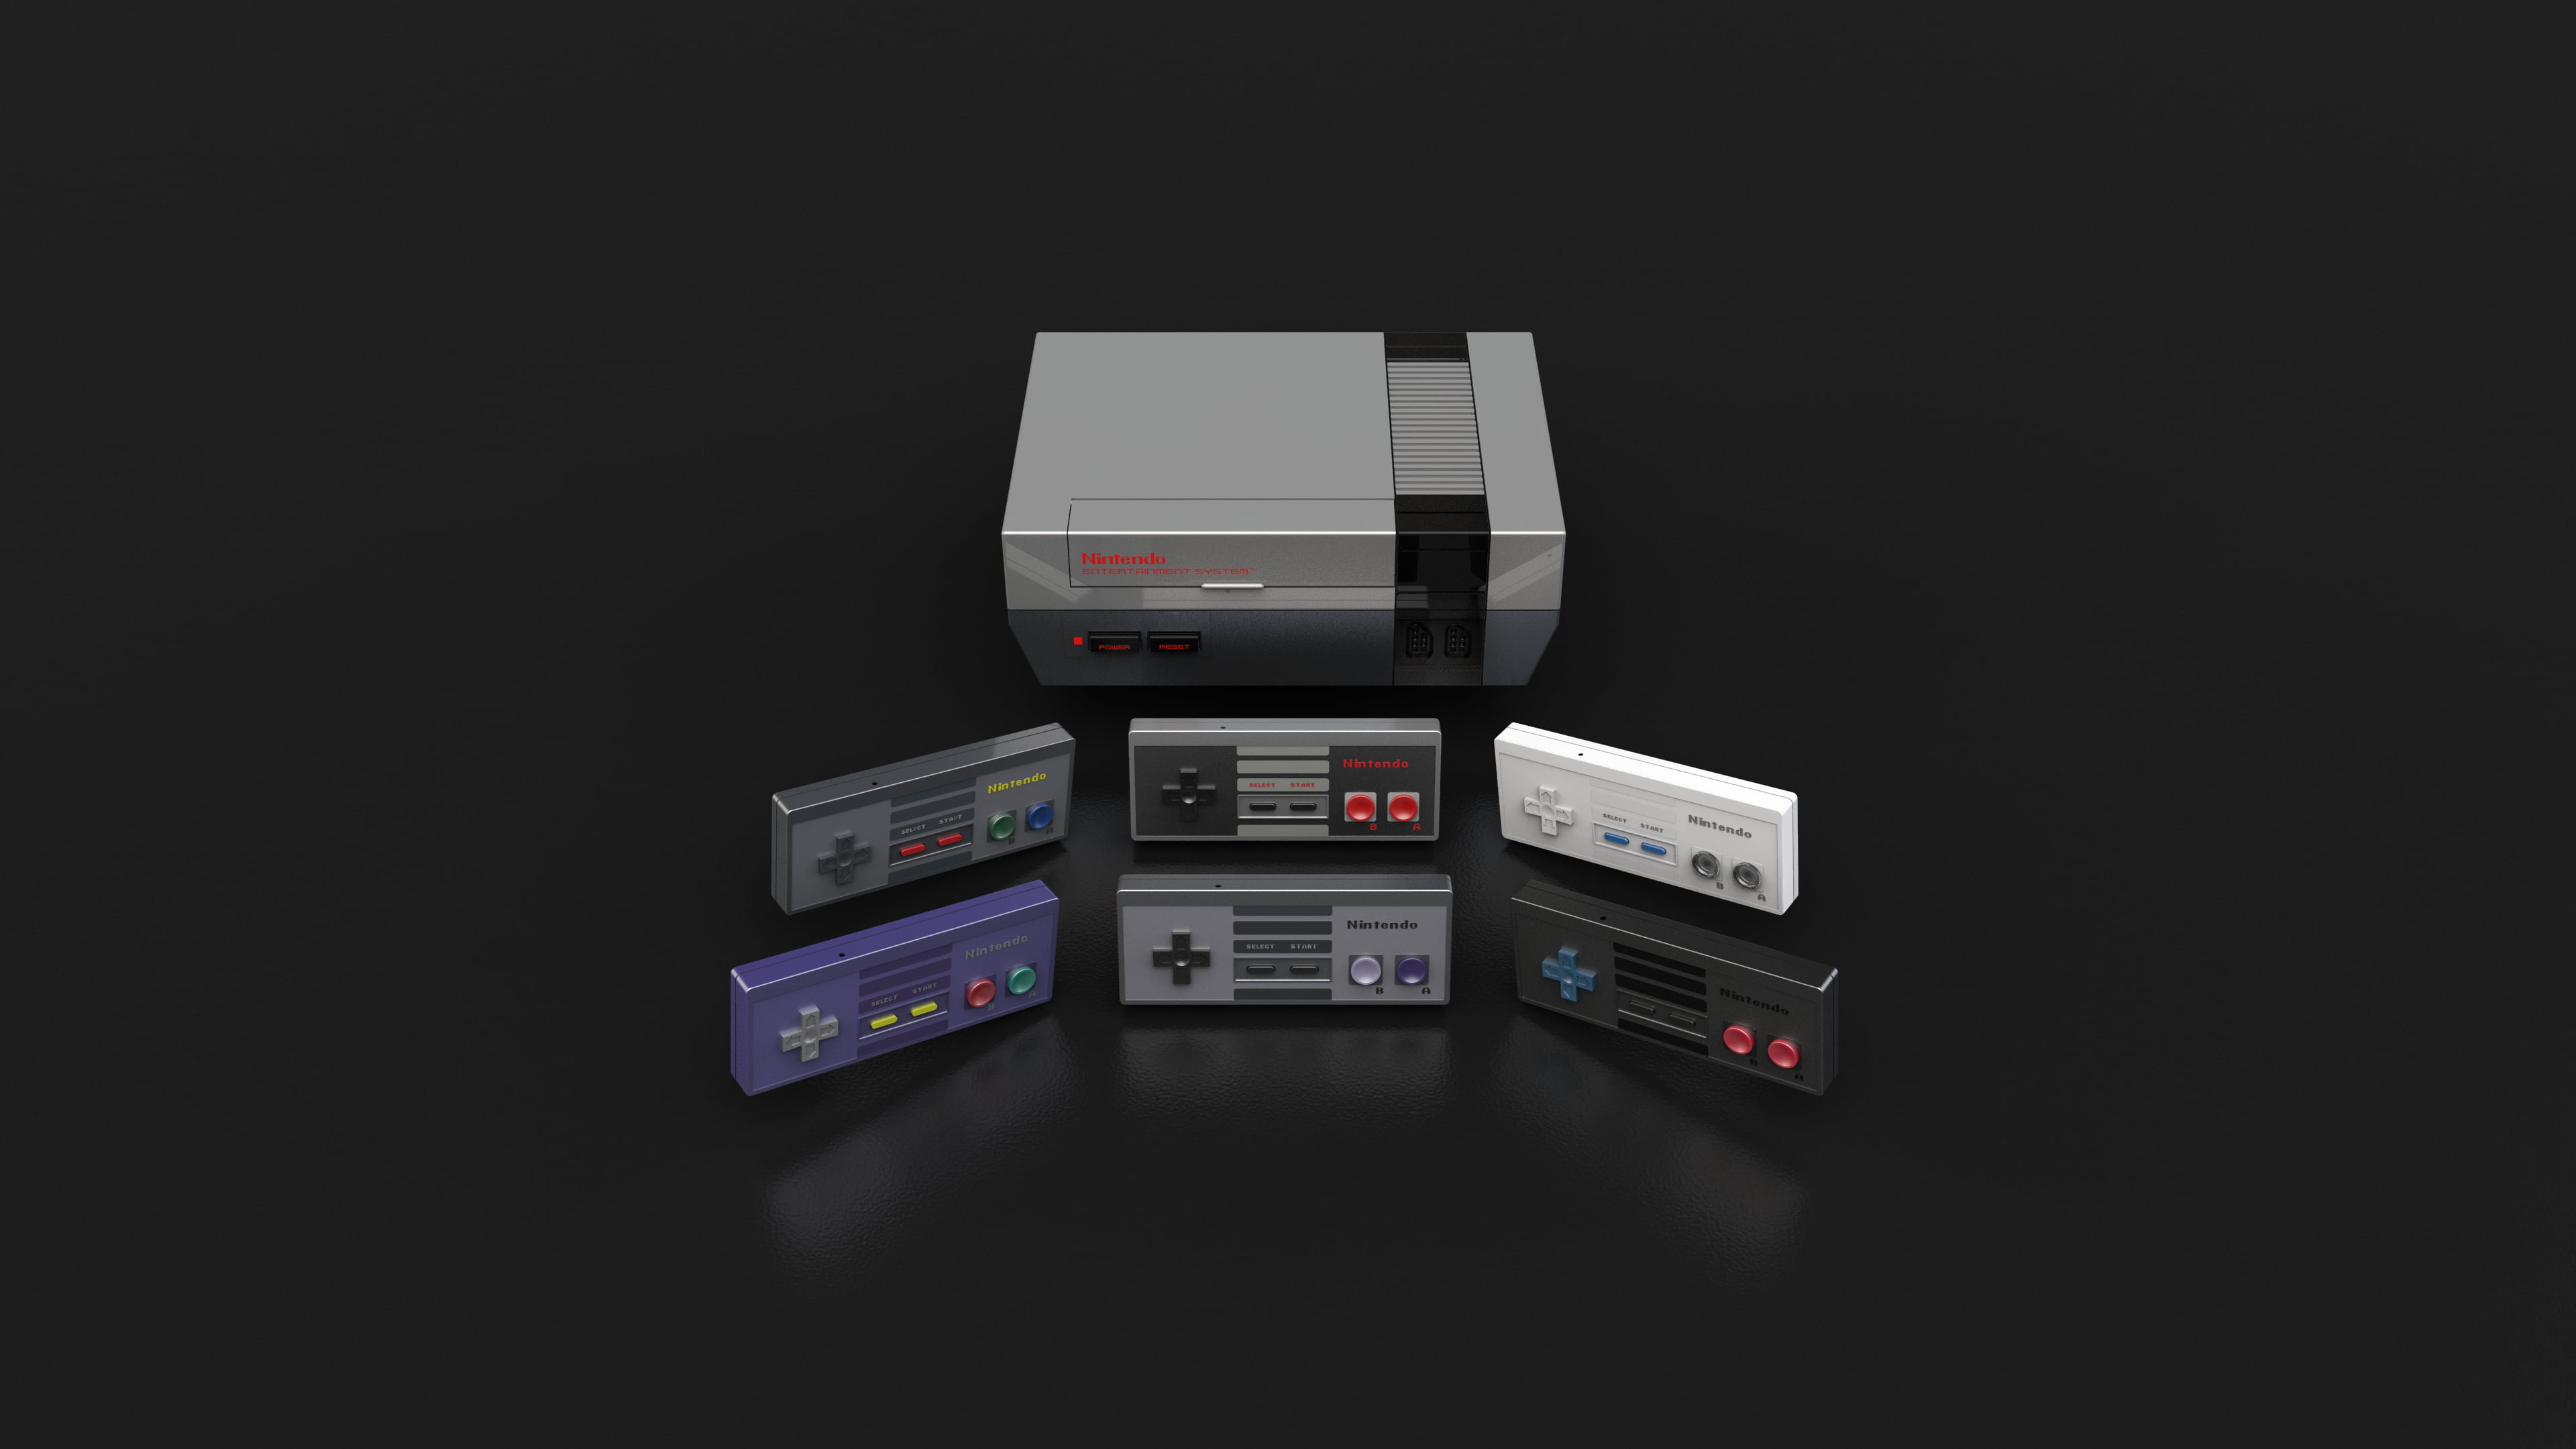 Nintendo: Original NES controller, An 8-bit third-generation home video game console. 3840x2160 4K Wallpaper.